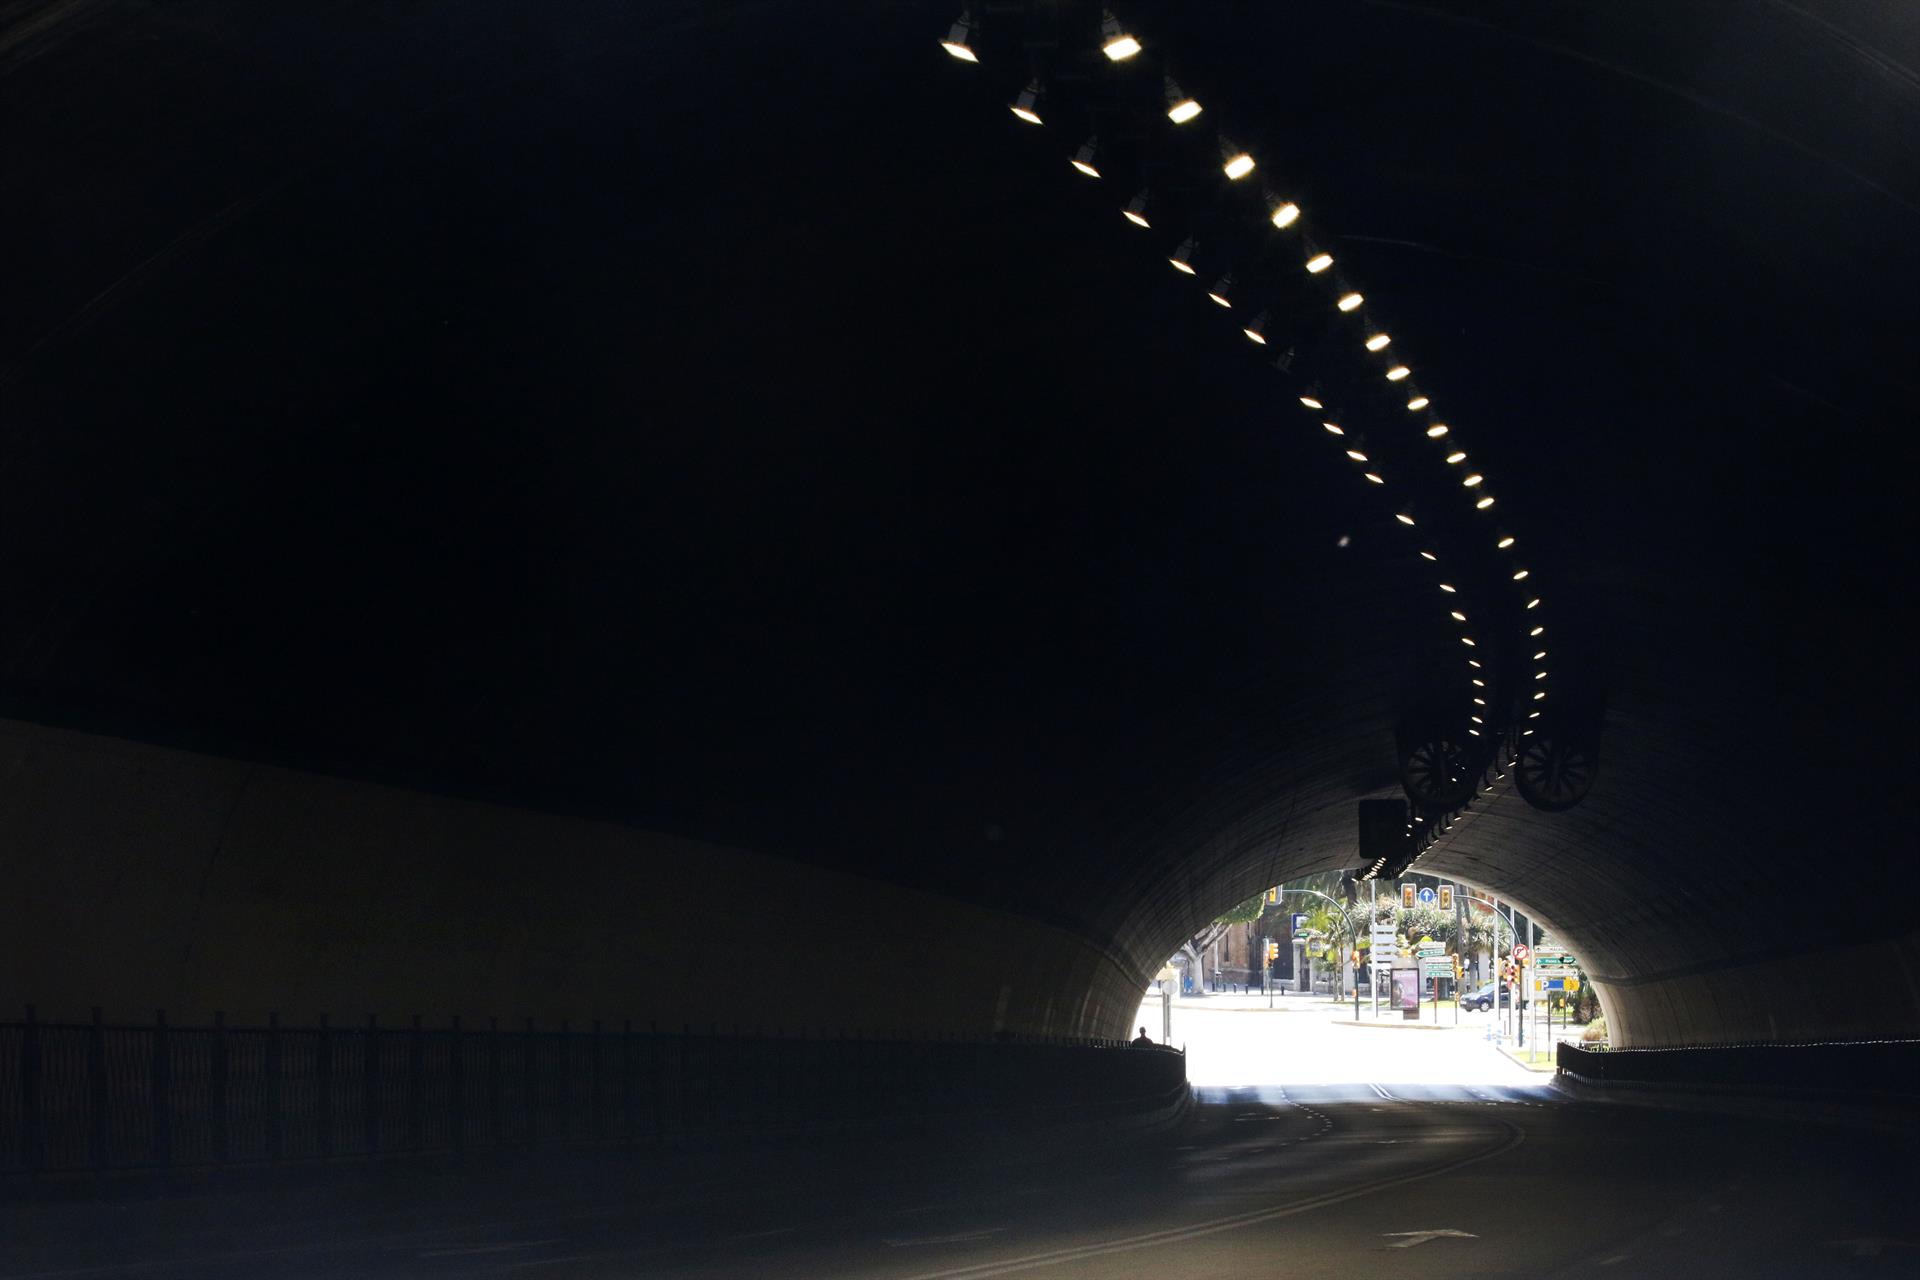 Afectaciones del tráfico en túnel Alcazaba Málaga